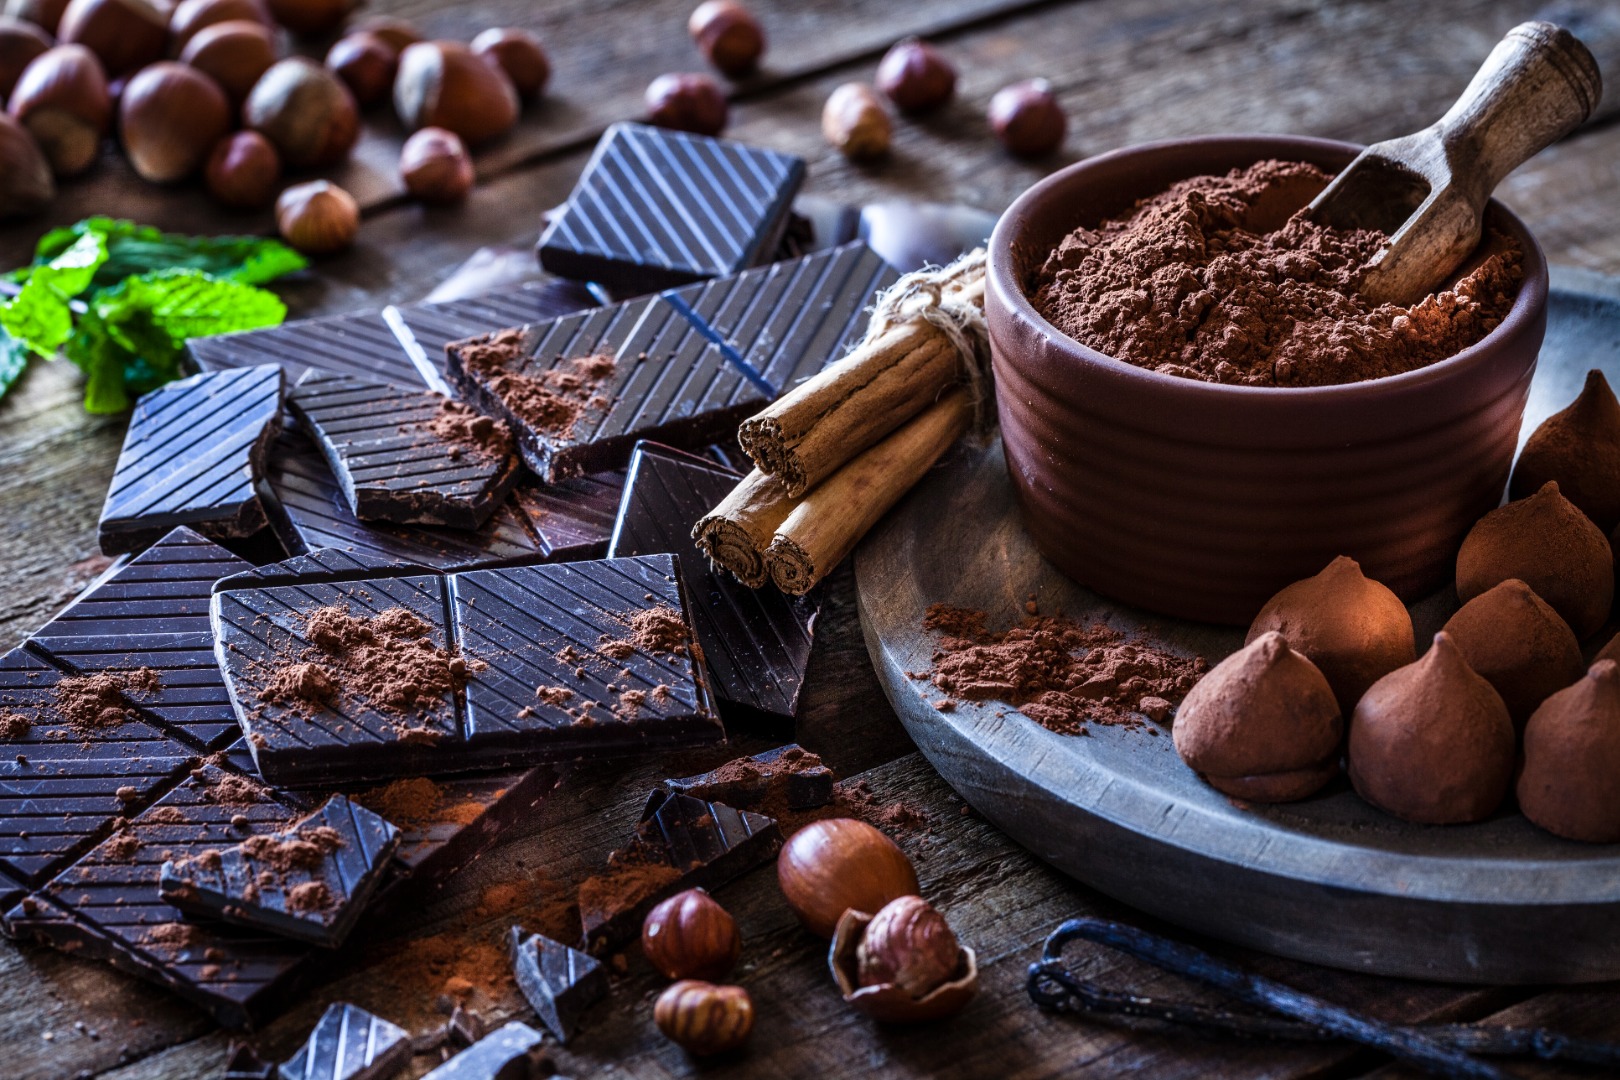 Bitter çikolata sağlıklı mı? Bitter çikolatanın faydaları neler?